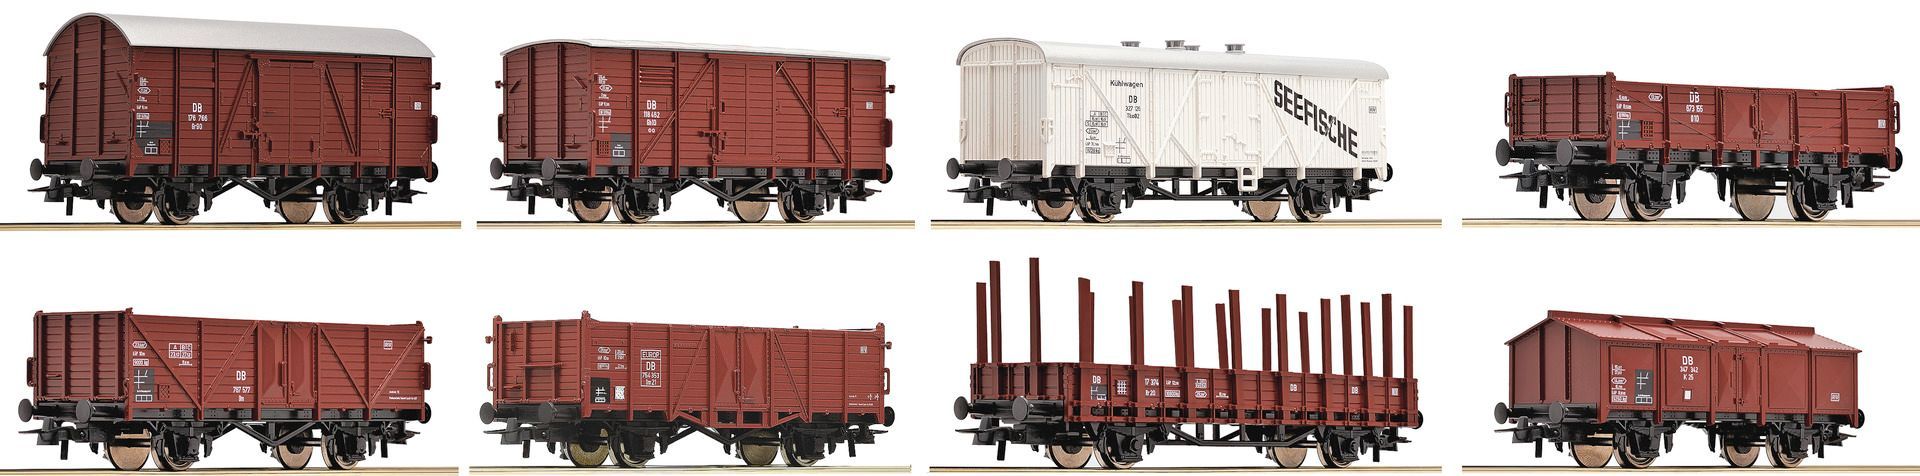 Roco 44002 - Güterwagen Set DB Ep.III 8 teilig H0/GL